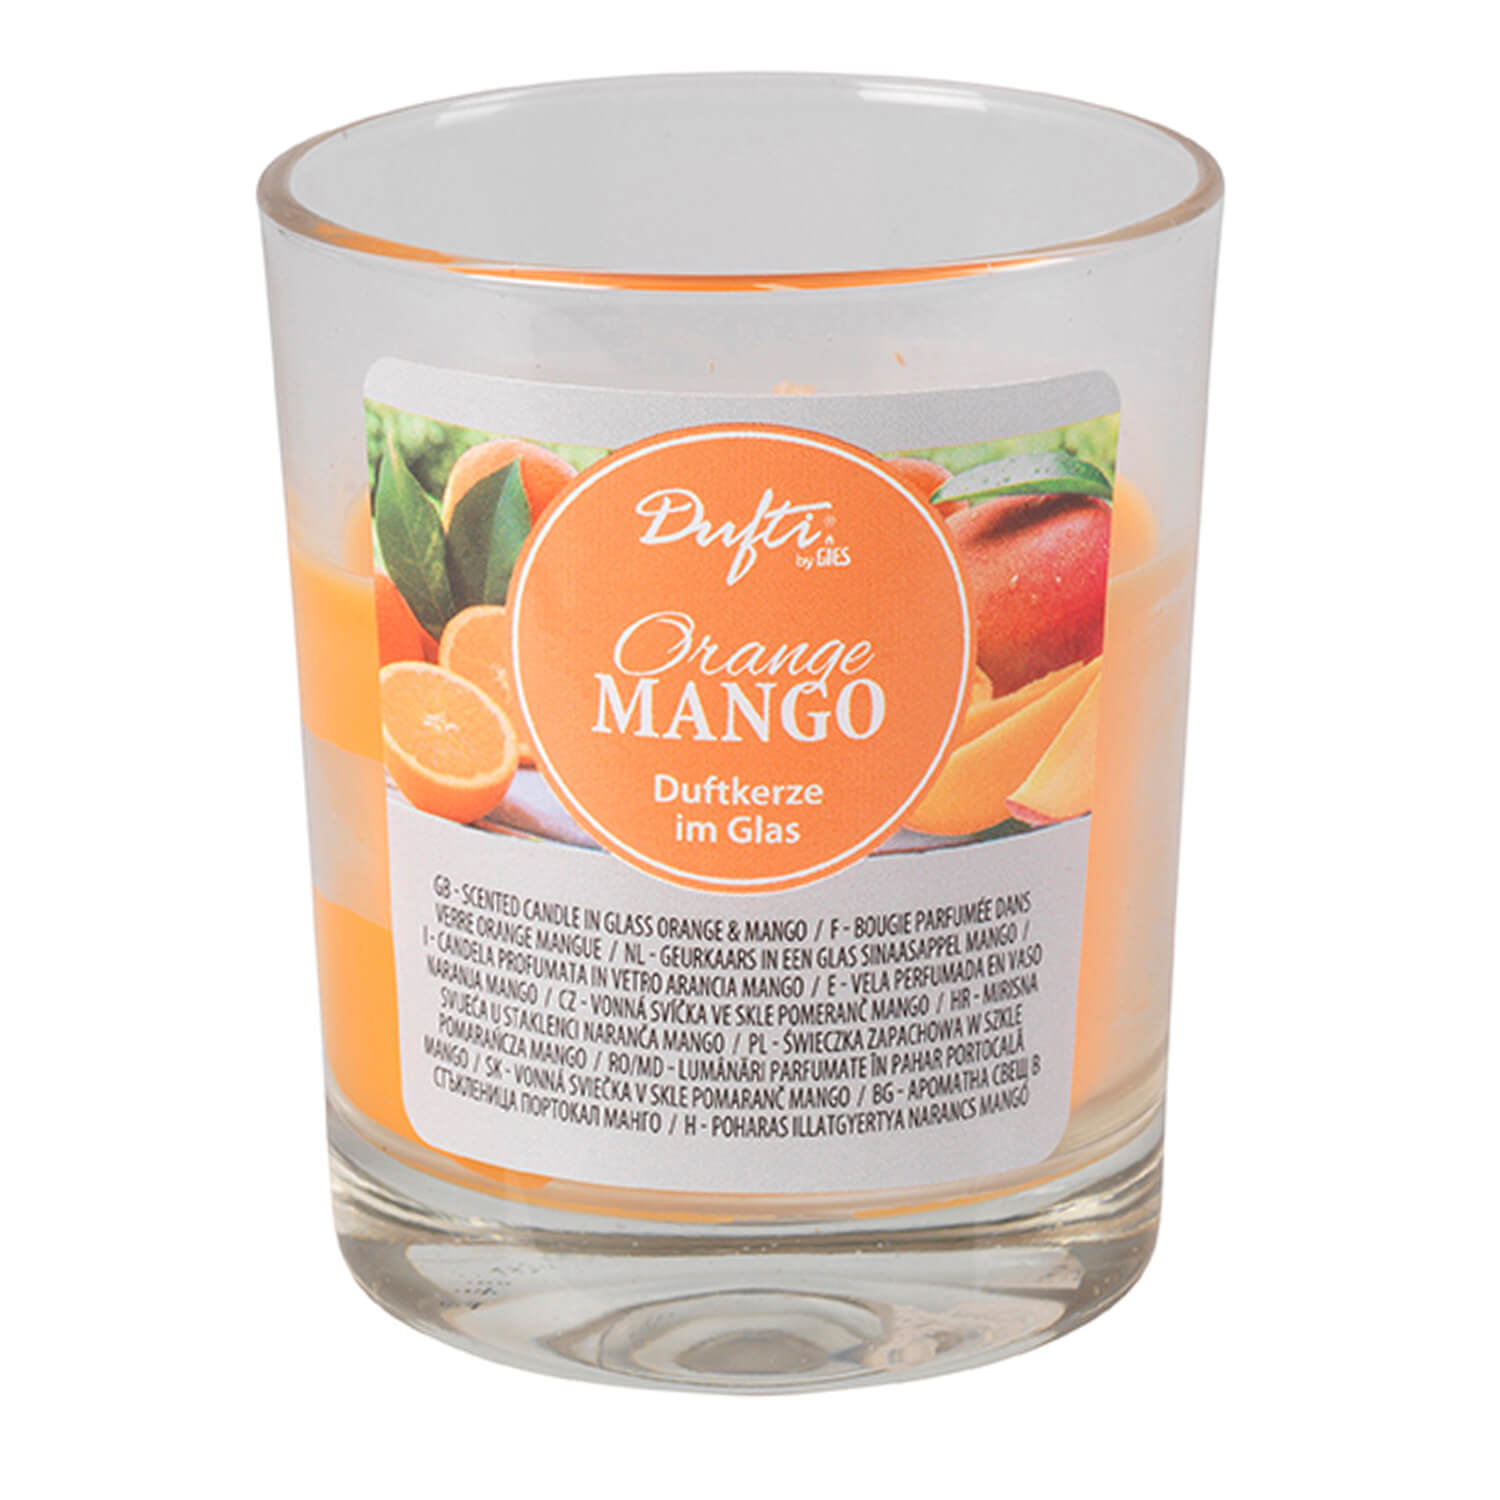 Dufti by Gies 213-611192-25 Duftkerze im Glas Orange Mango